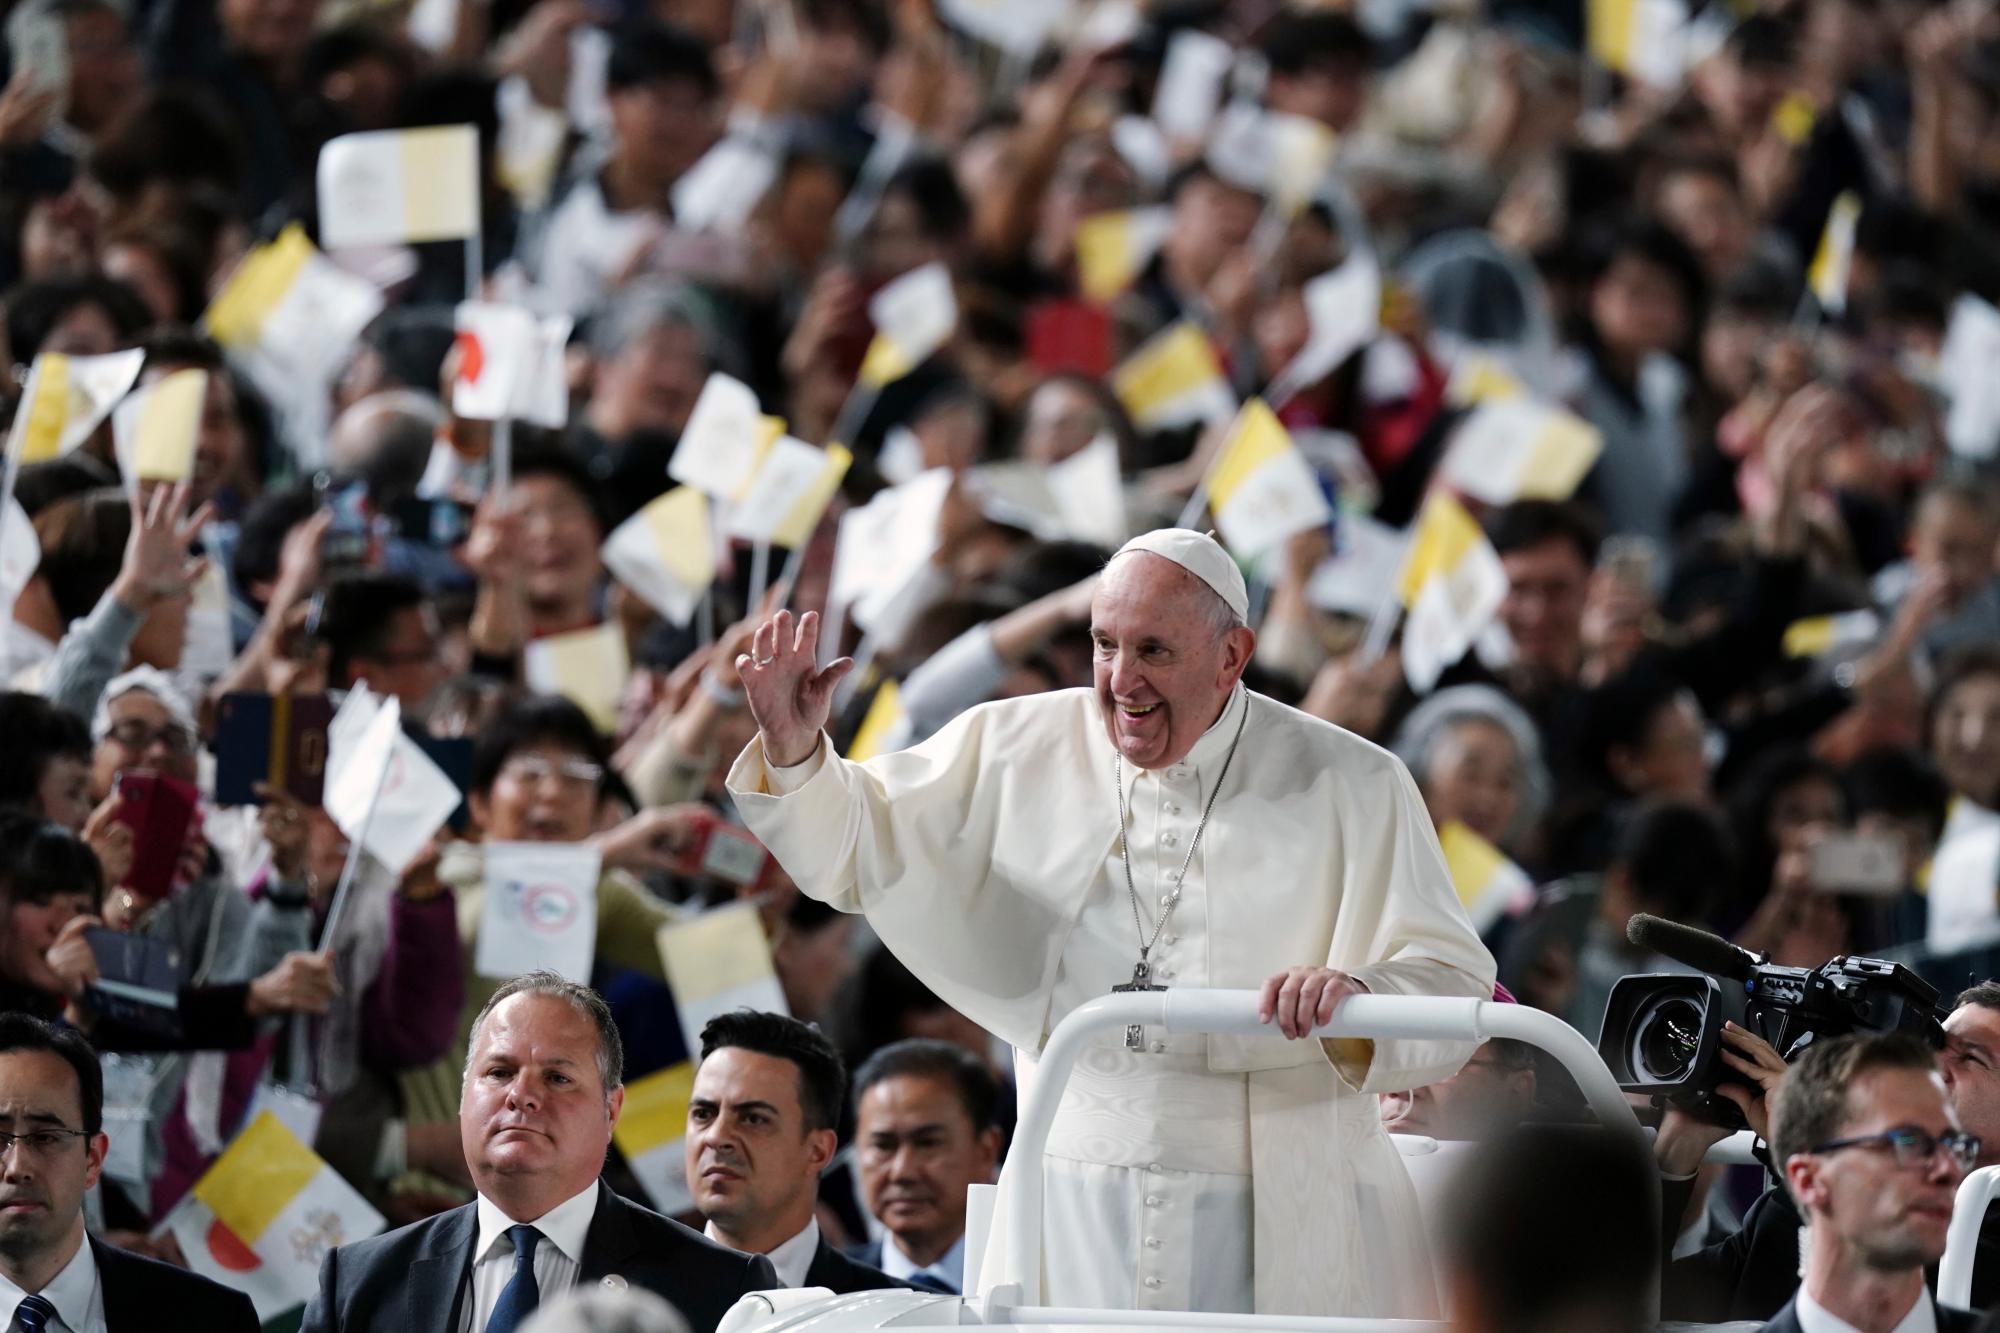 El Papa Francisco saluda a Popemobile cuando llega a la Santa Misa en Tokyo Dome el lunes 25 de noviembre de 2019 en Tokio.